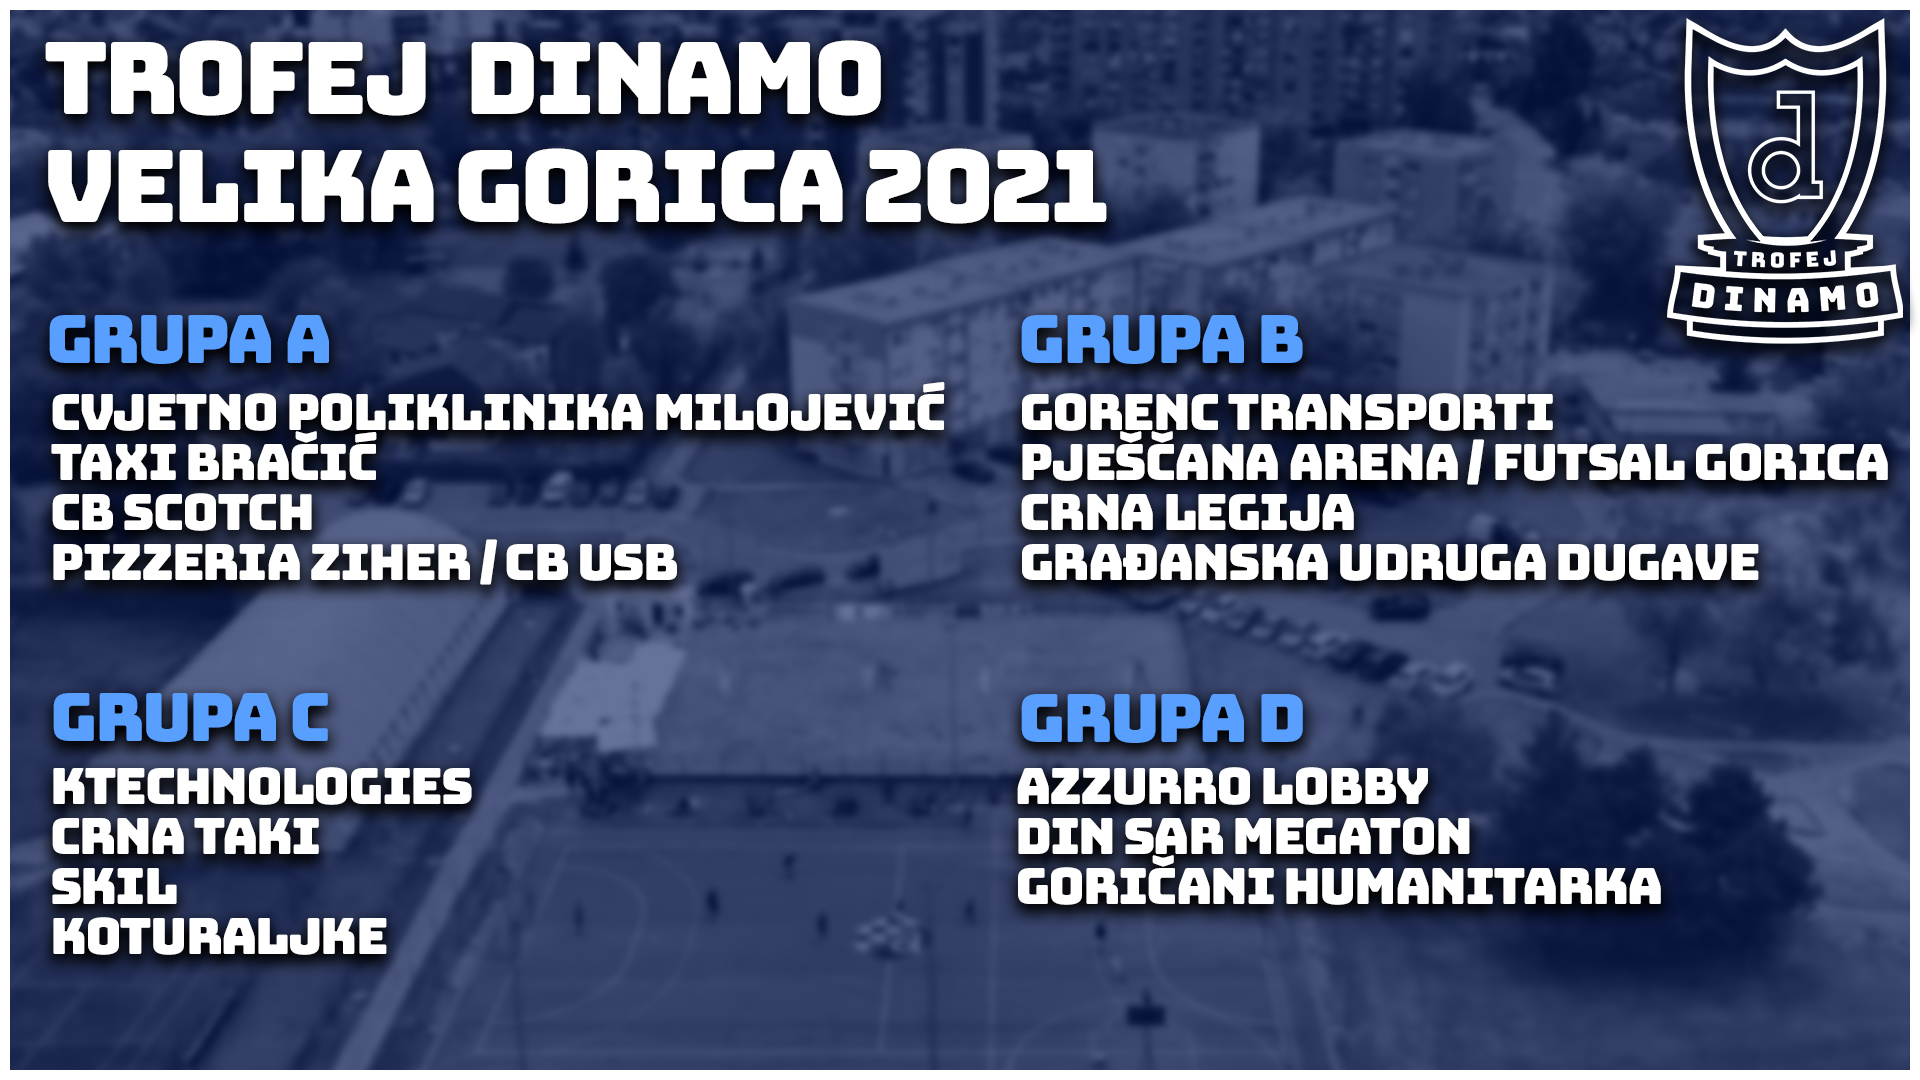 Trofej Dinamo Velika Gorica 2021 Grupe